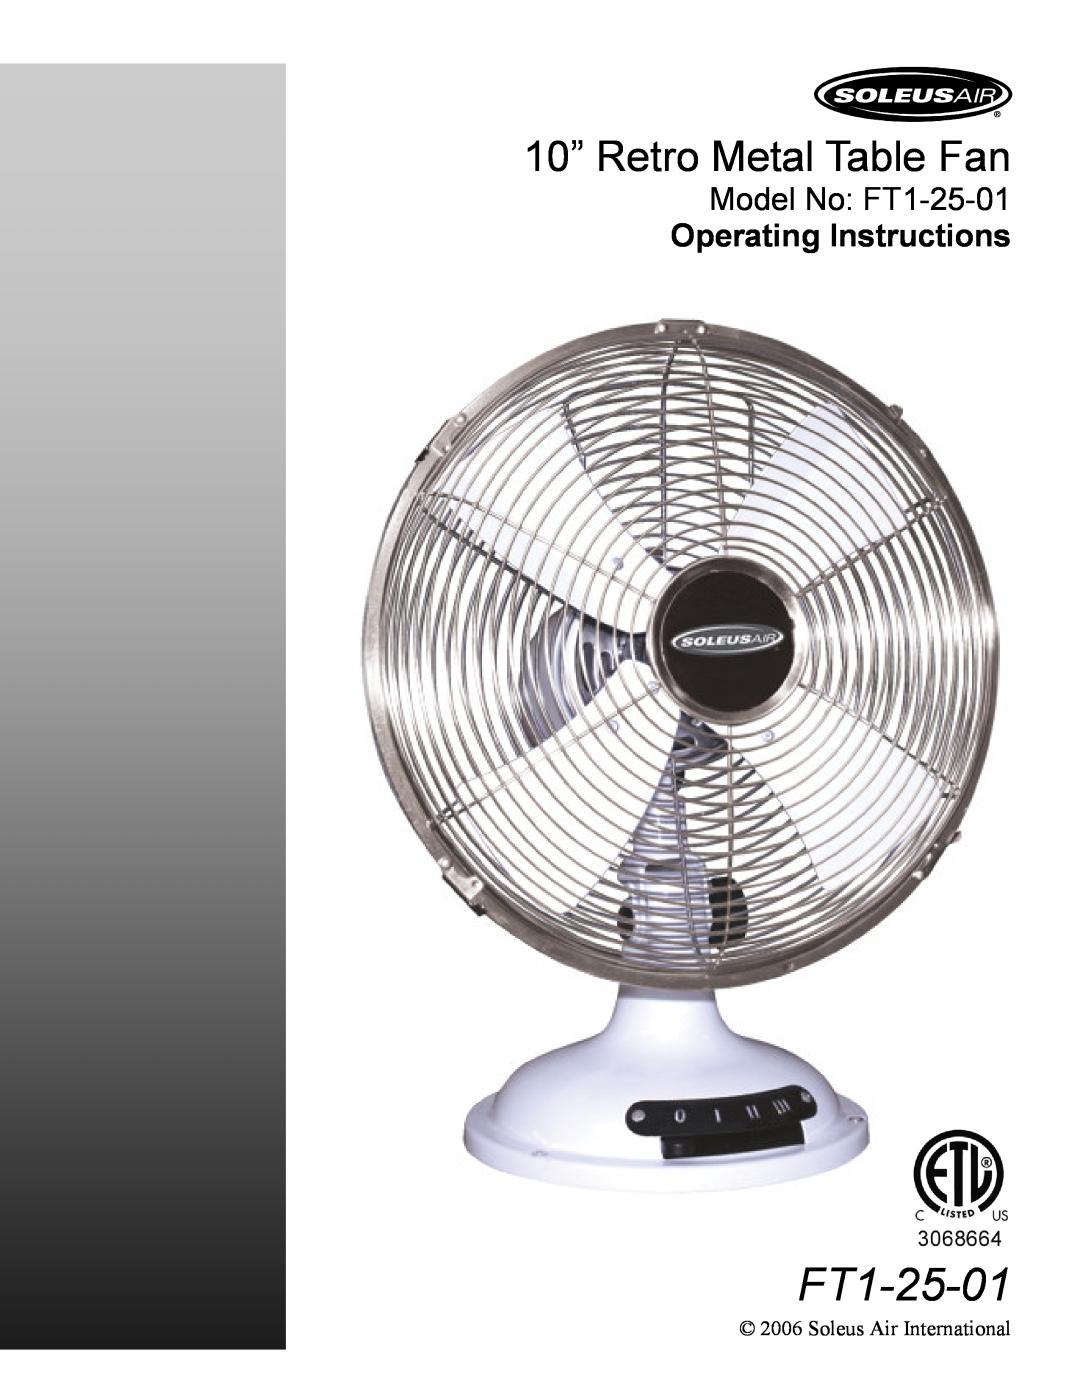 Soleus Air operating instructions 10” Retro Metal Table Fan, Model No FT1-25-01 Operating Instructions 